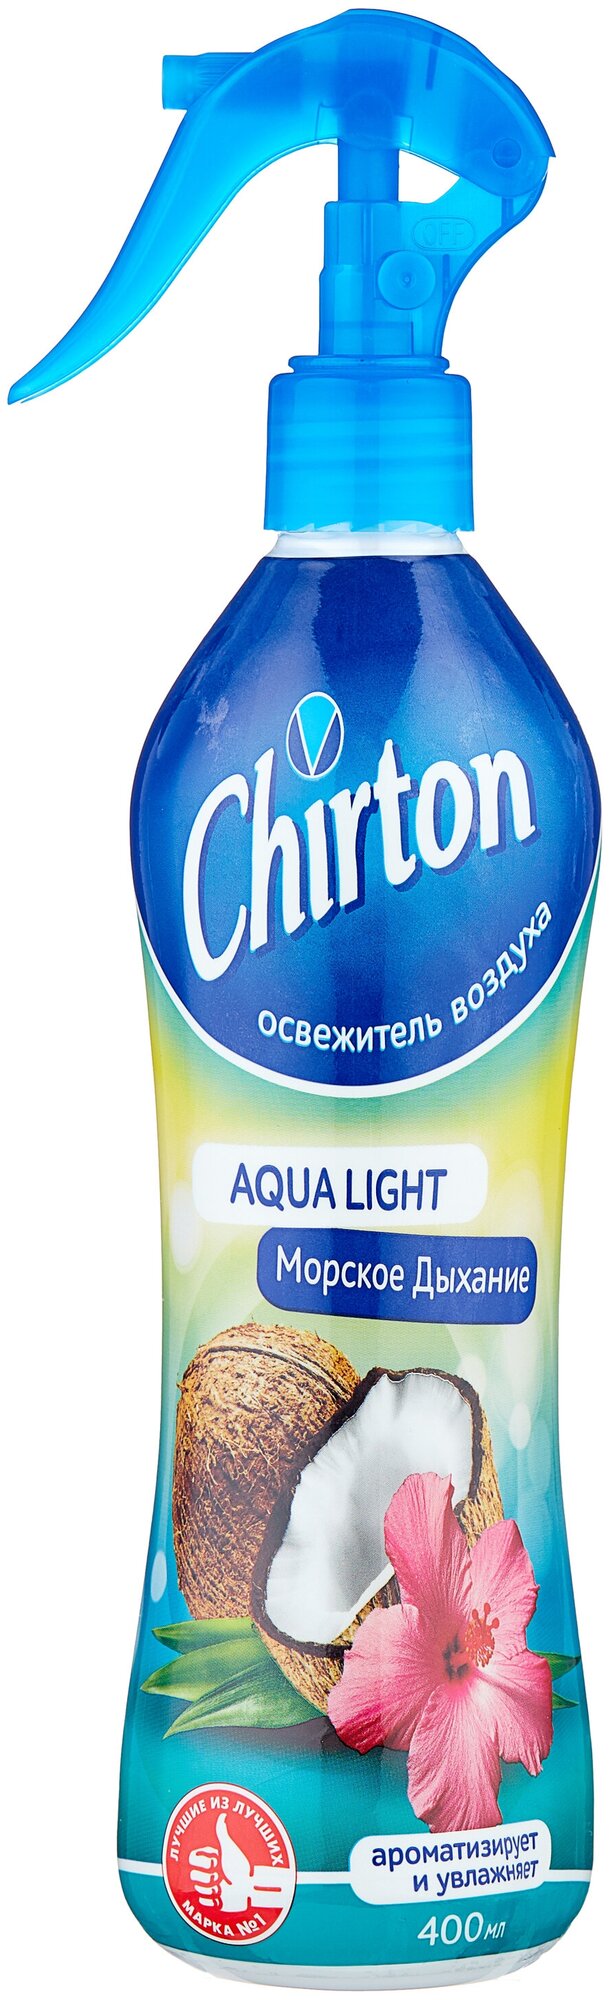 Chirton спрей Aqua Light Морское дыхание 400 мл